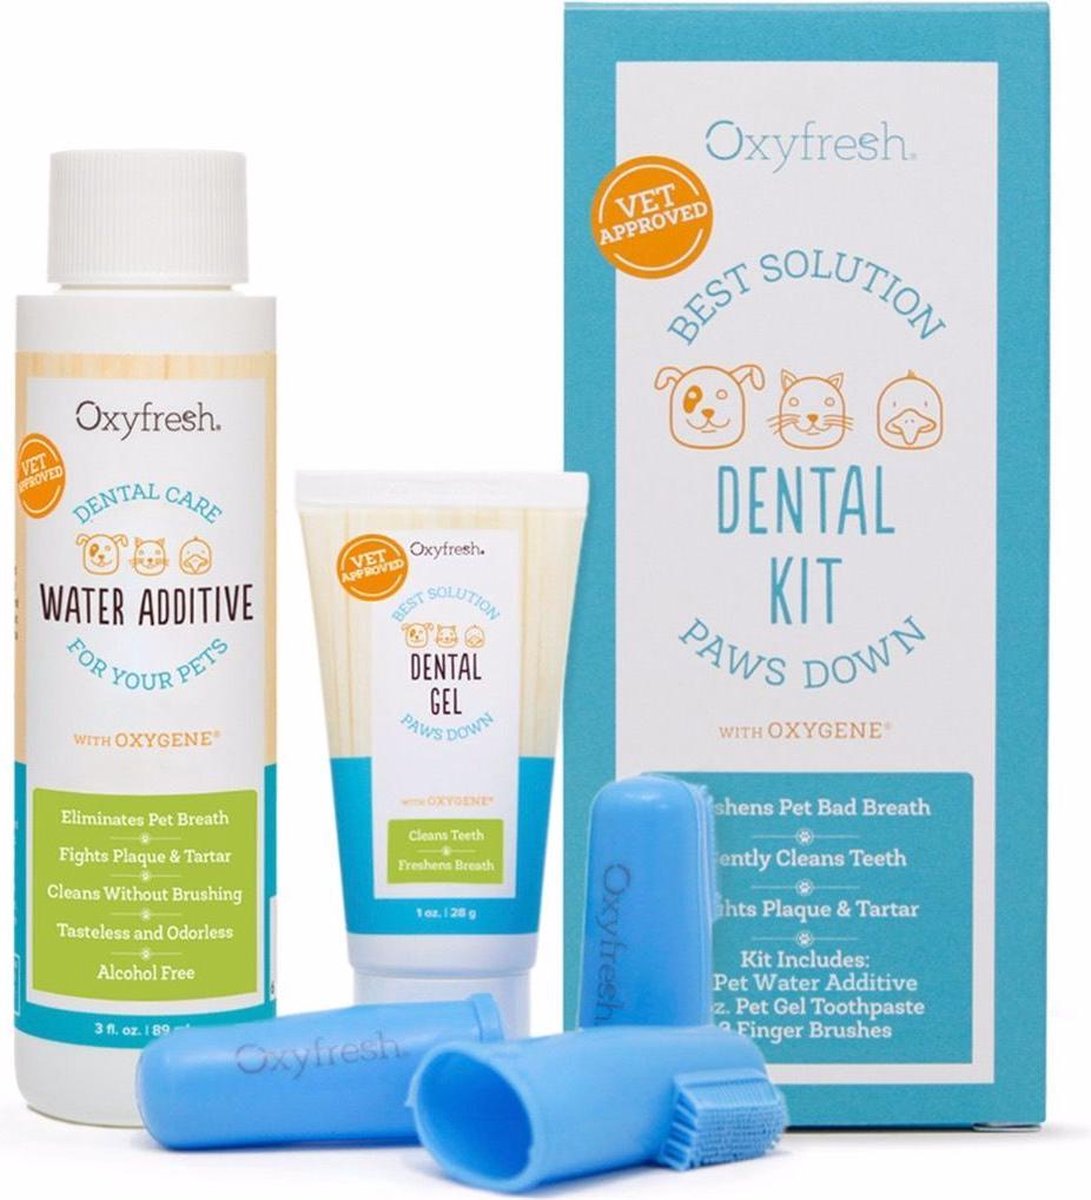 OxyFresh Pet Dental Kit